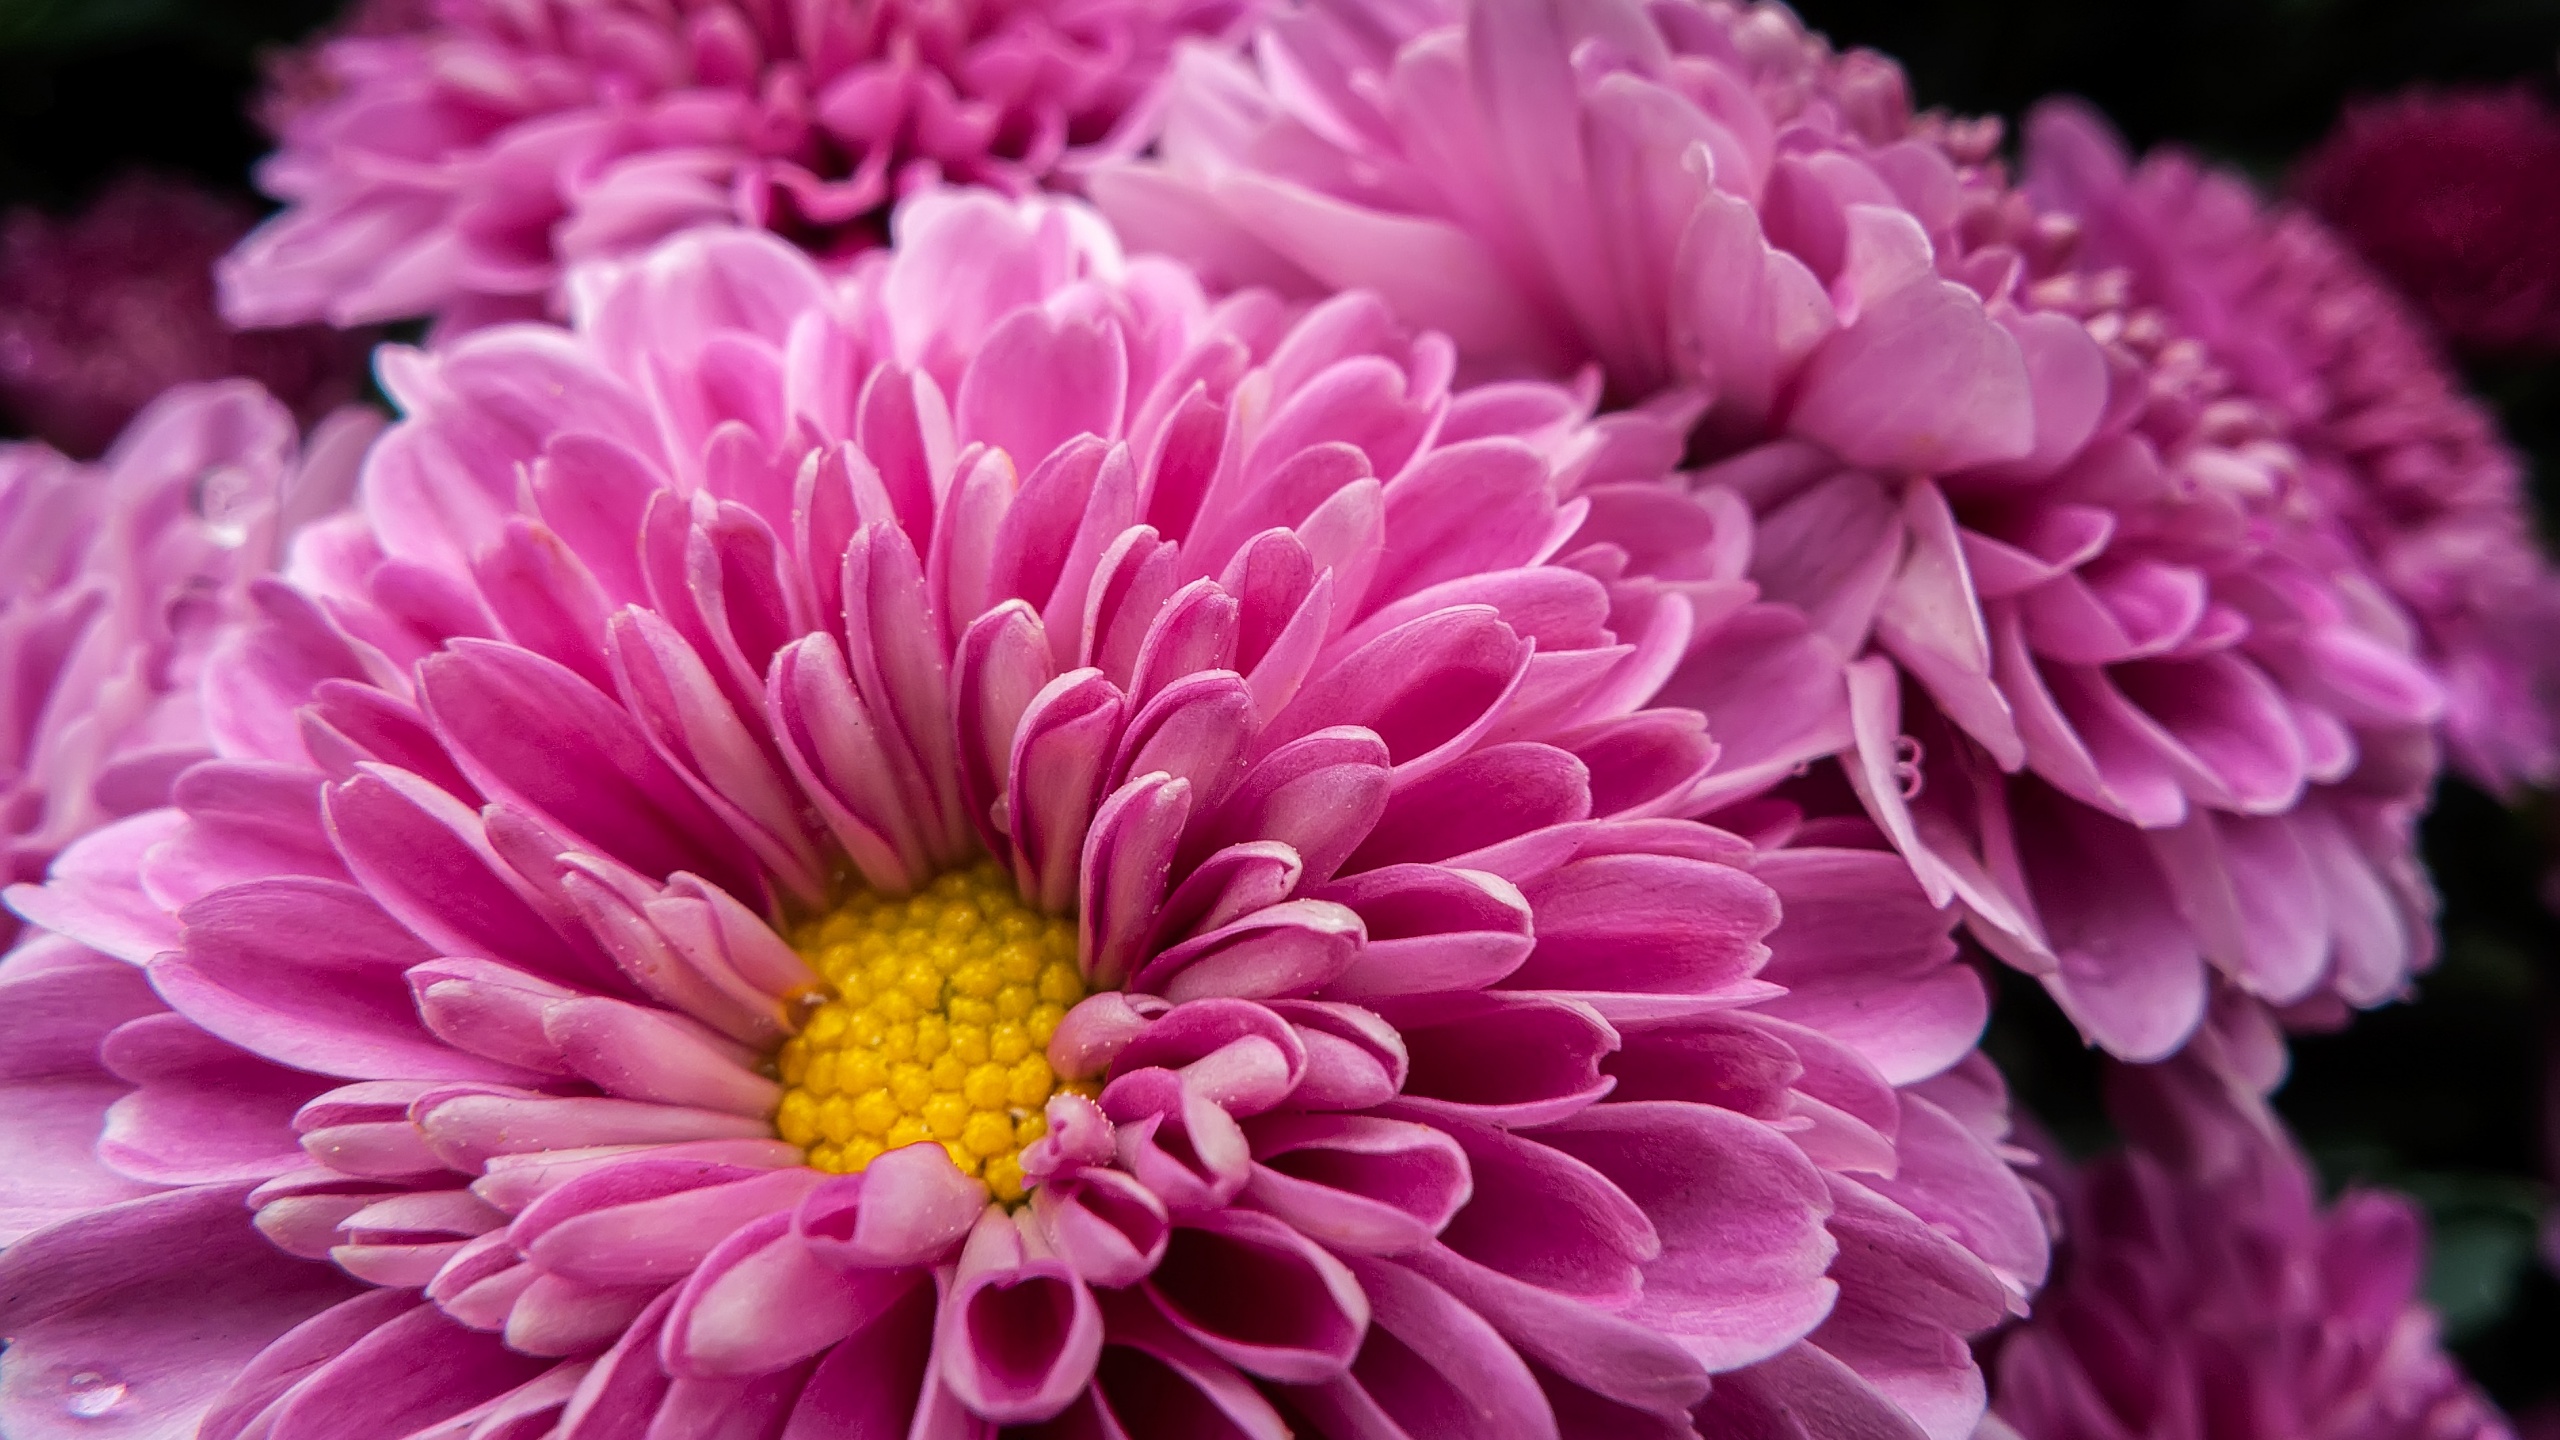 Download Pink Chrysanthemum hd photos | Free Stock Photos - Lovepik